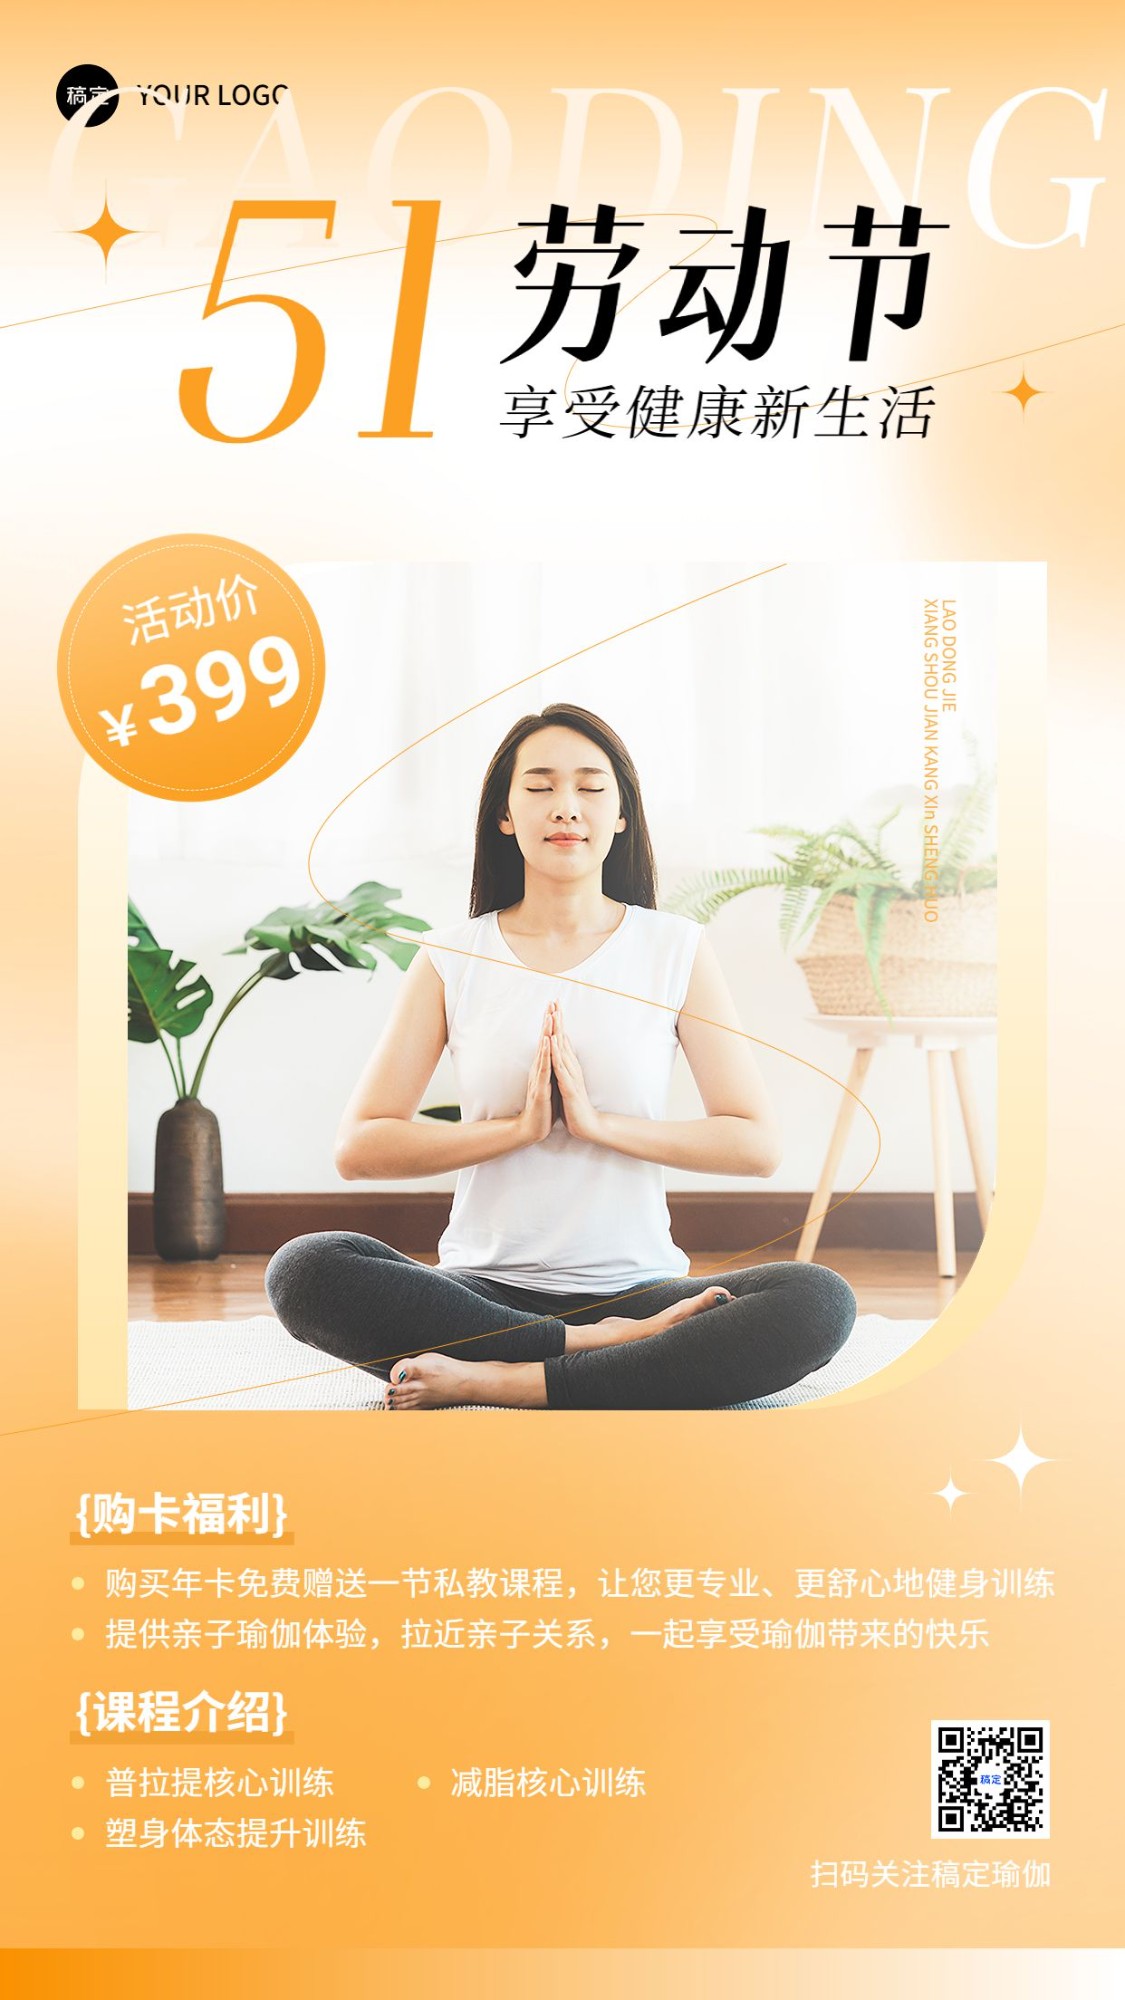 劳动节健身瑜伽门店营销促销办年卡活动竖版海报预览效果